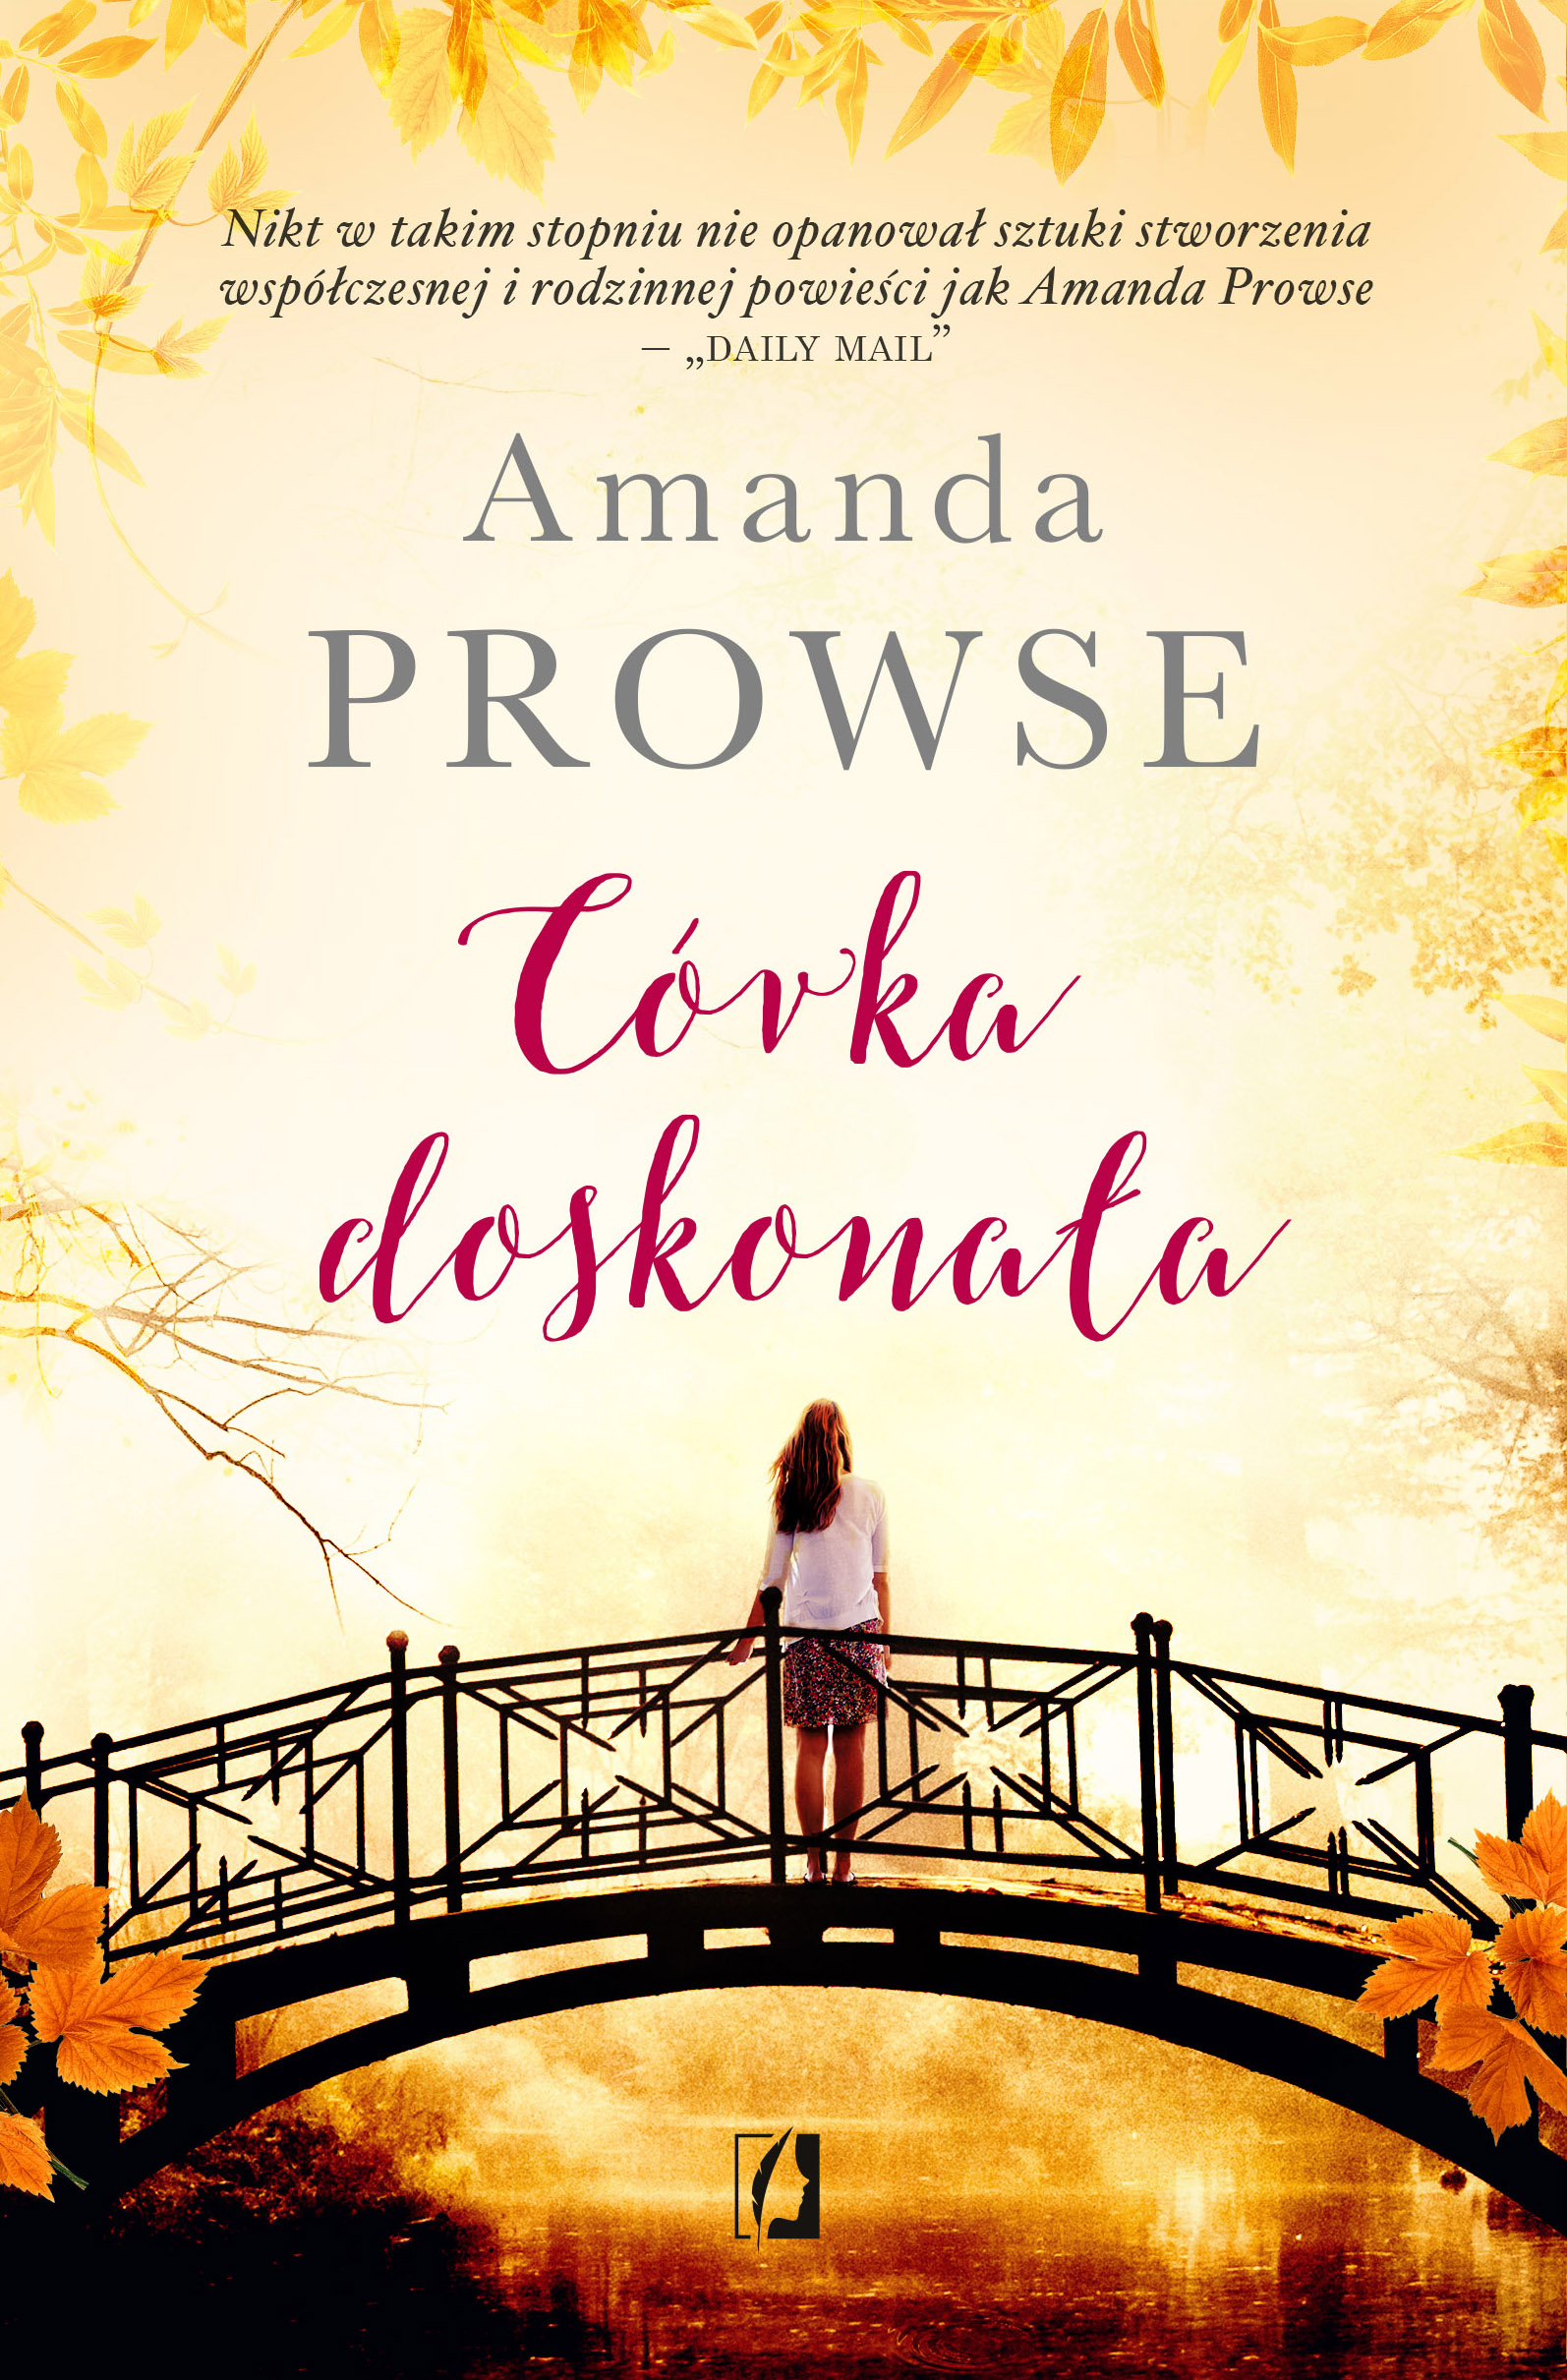 Córka idealna – Amanda Prowse